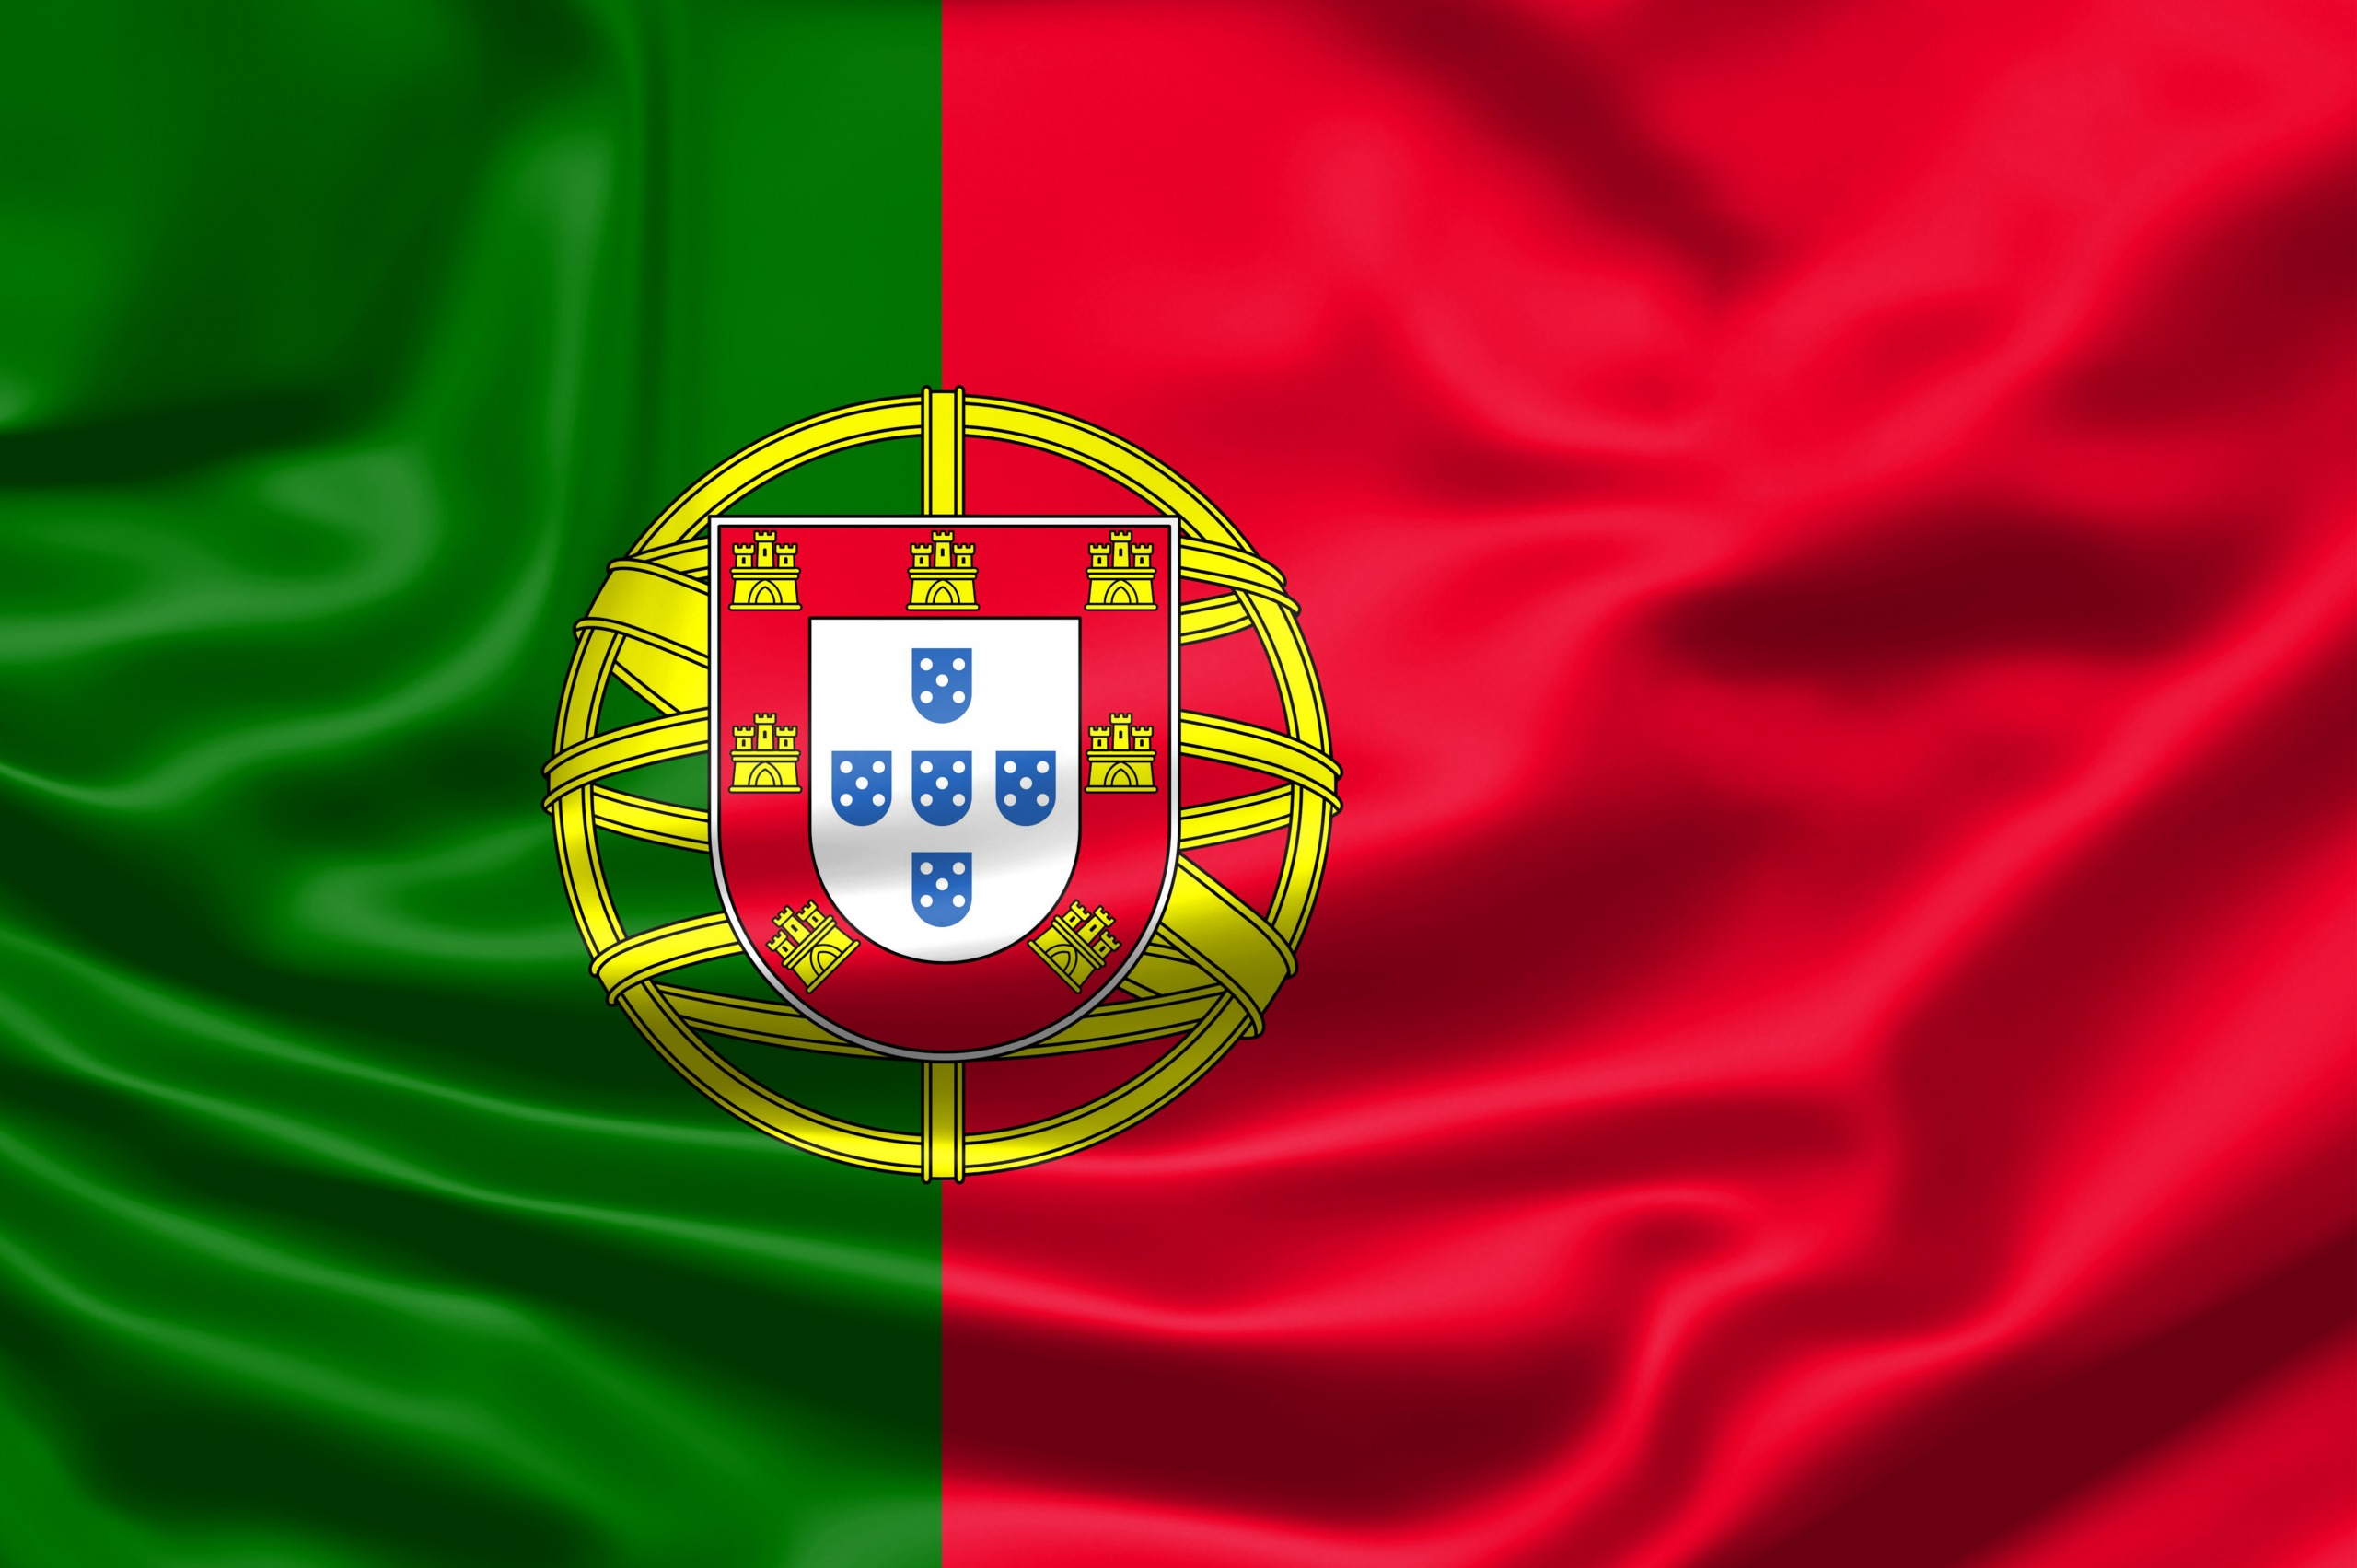 Le drapeau du Portugal - Soprasi